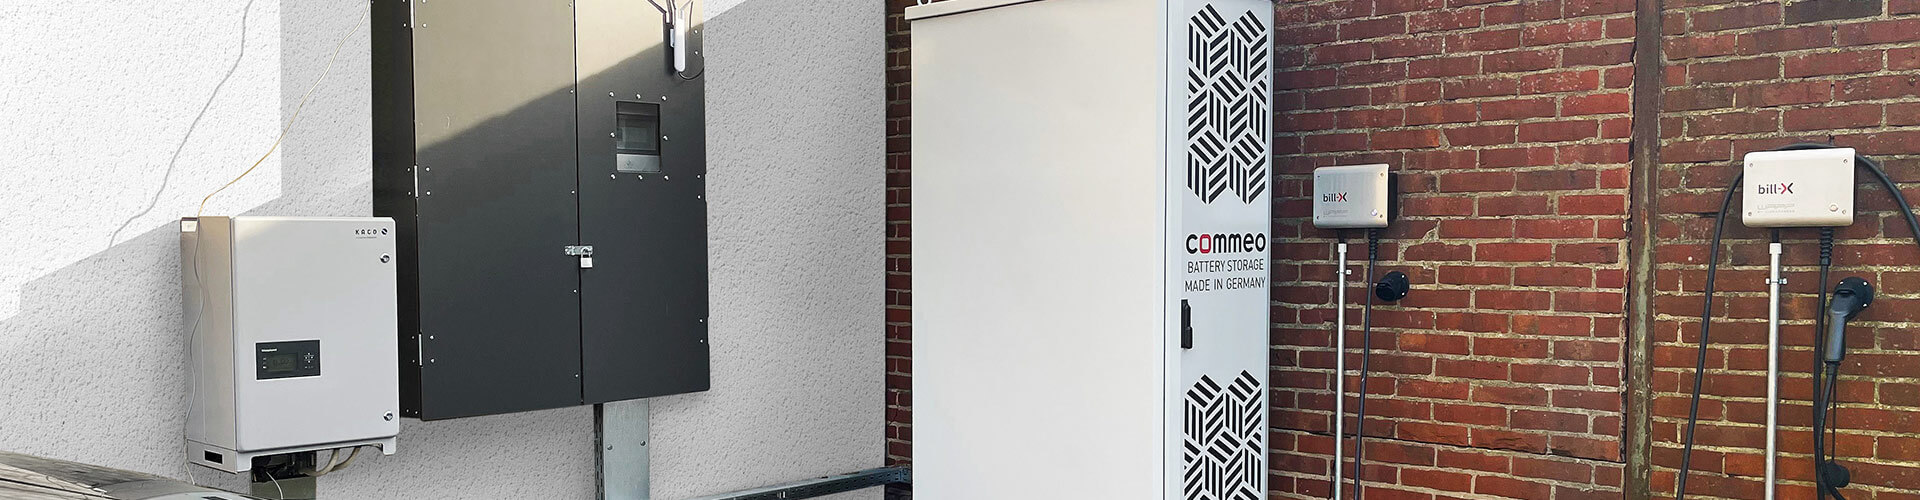 Das Bild präsentiert einen Commeo Batteriespeicher im Außenbereich der Firma bill-x GmbH. Deutlich sichtbar ist ein E-Auto, das gerade von diesem Speicher geladen wird.